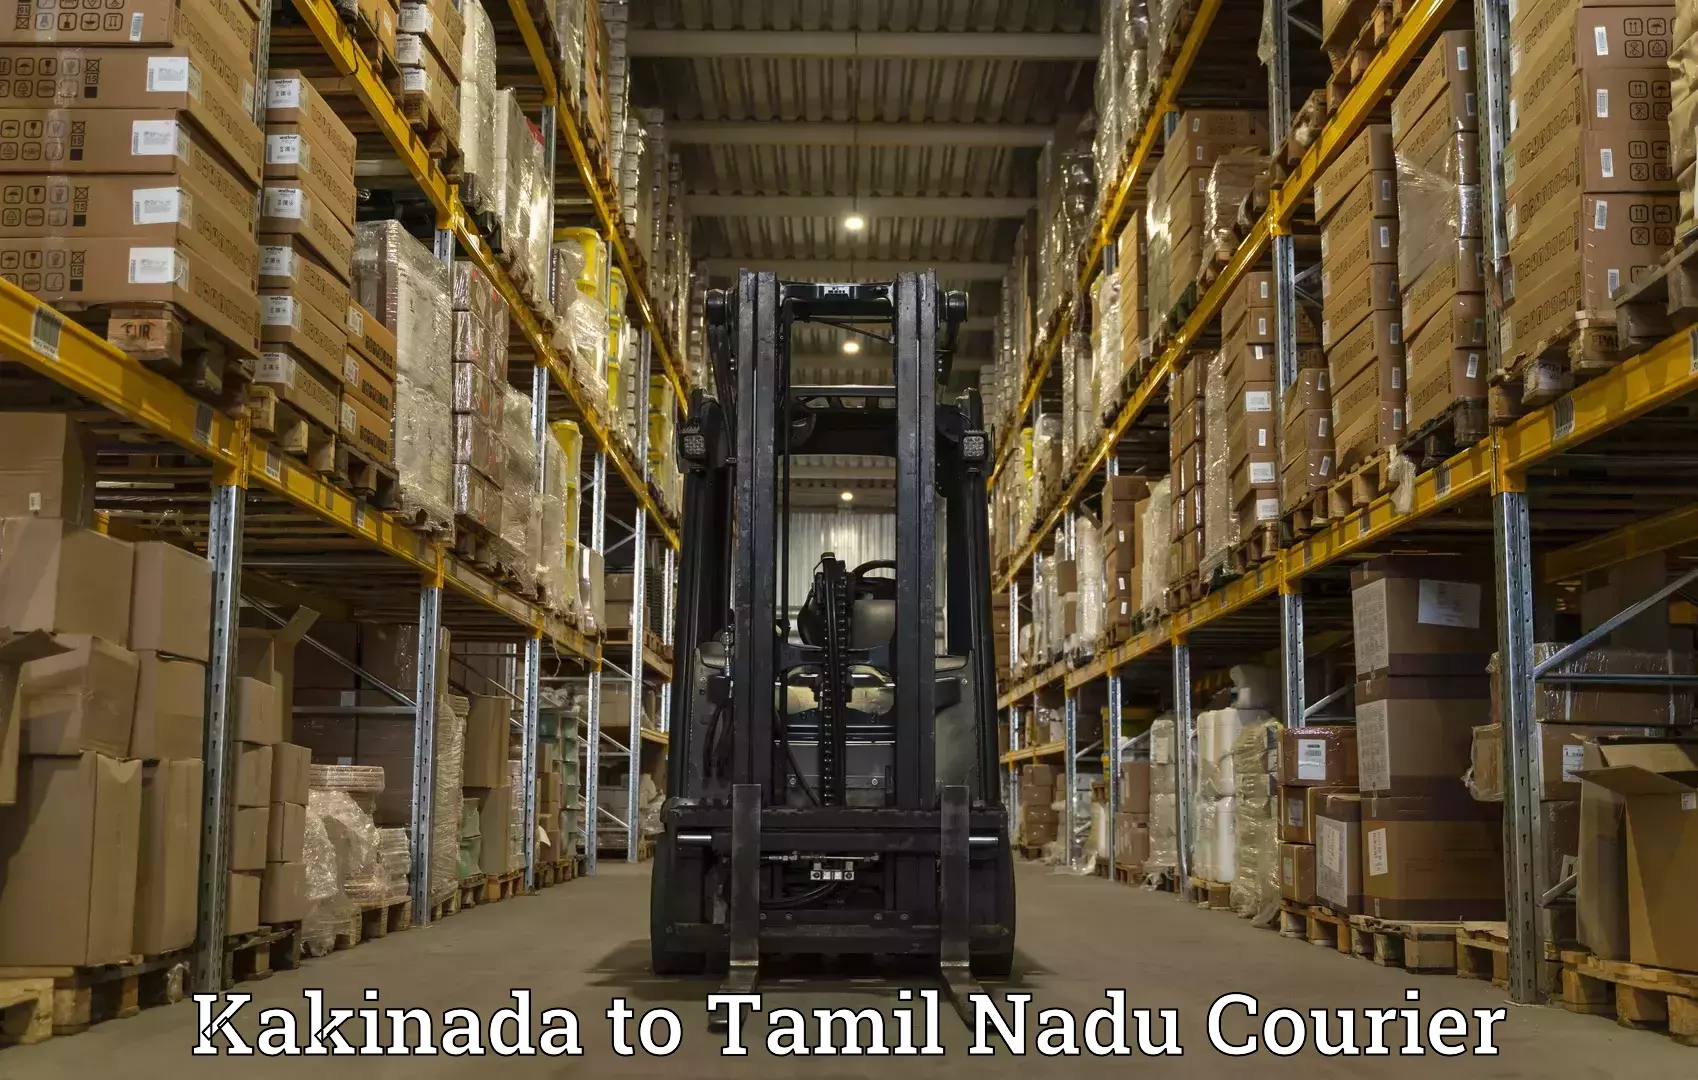 Supply chain efficiency Kakinada to Thiruthuraipoondi